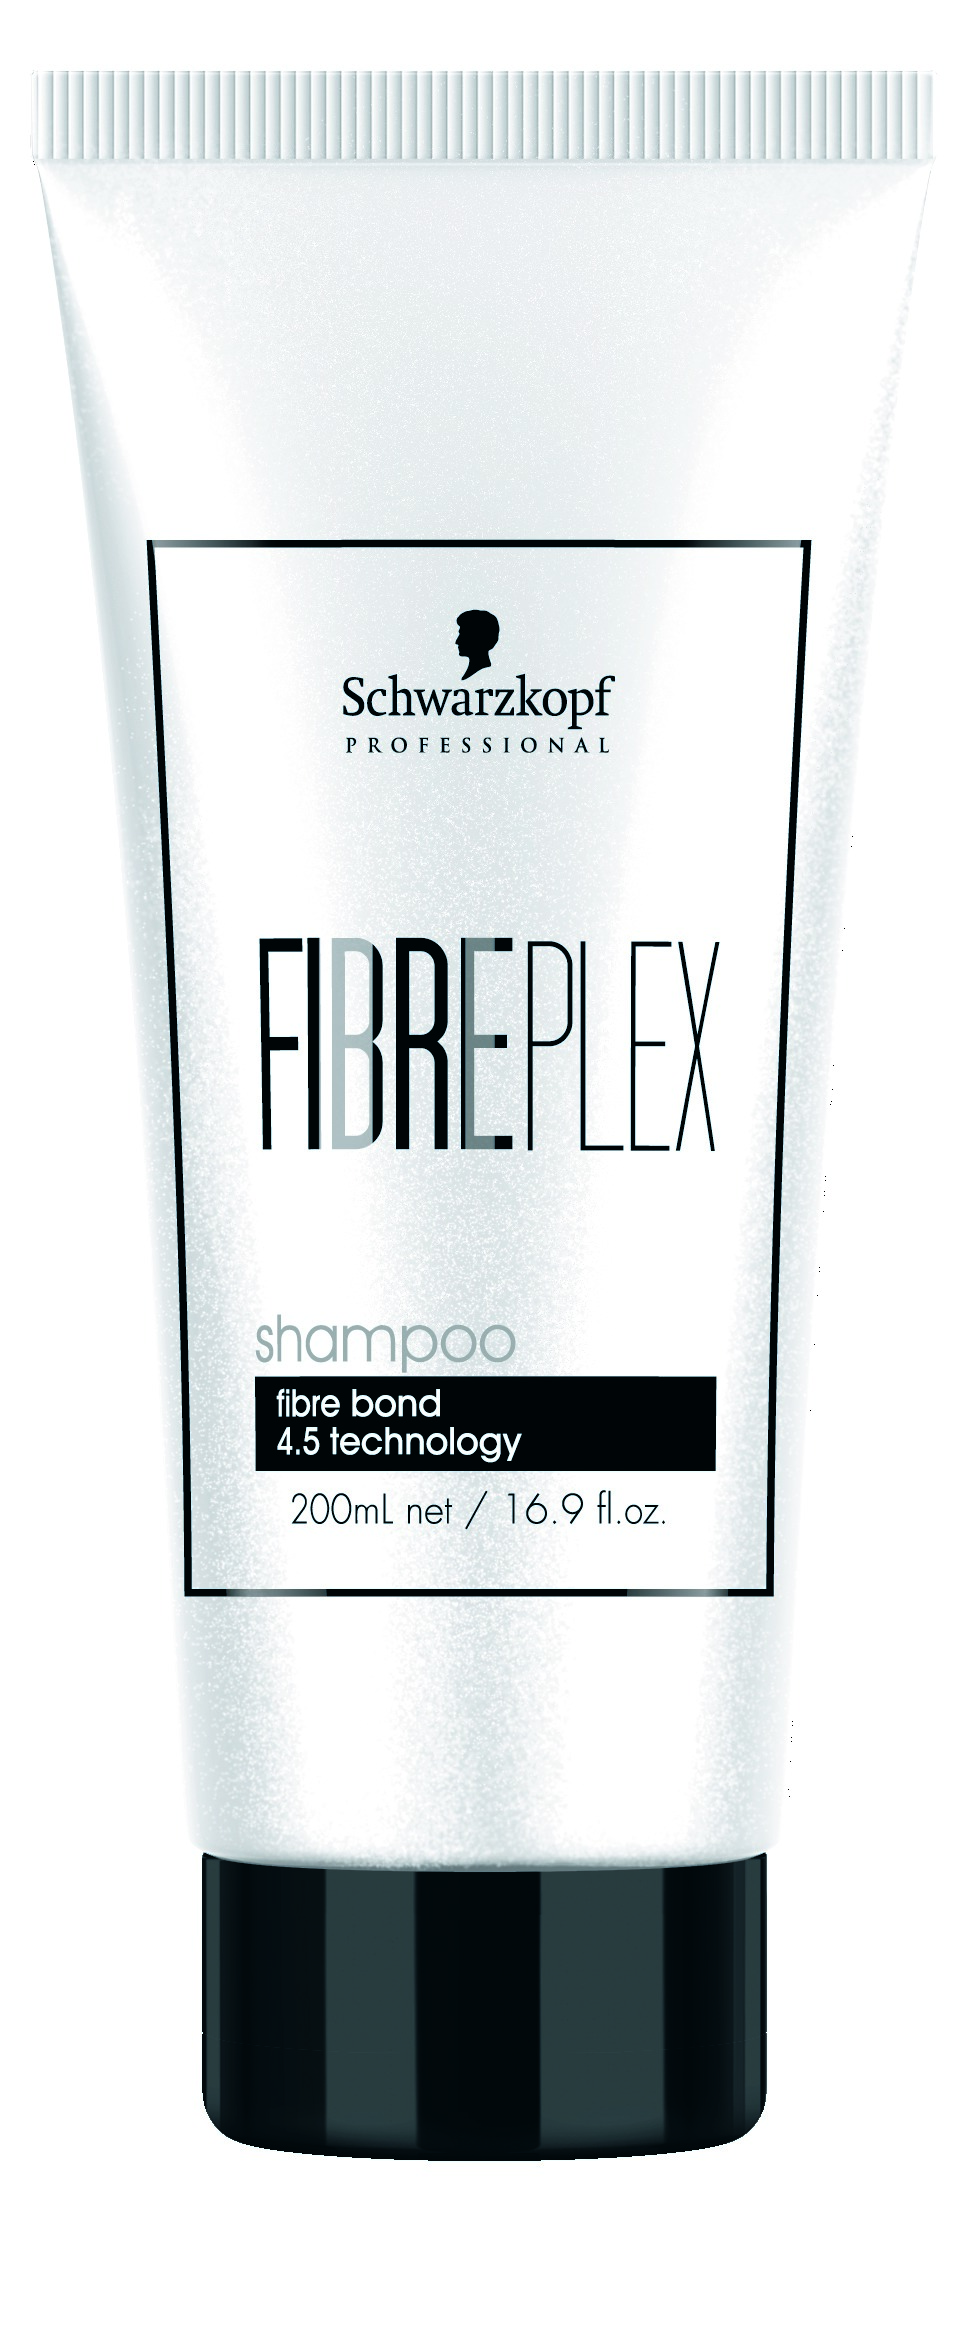 Fiberplex Shampoo,   200ml